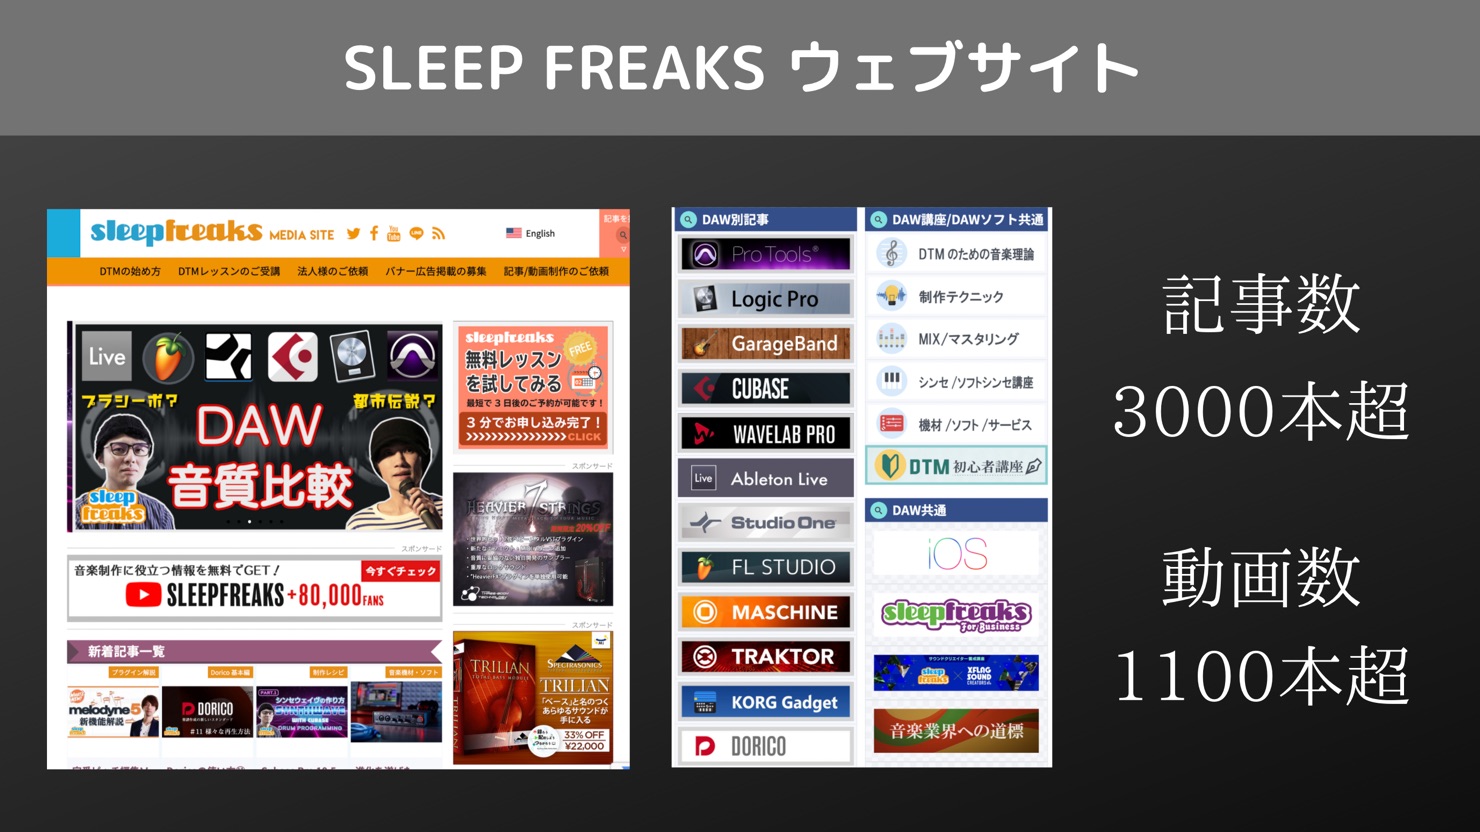 Sleepfreaks-Media-Site-Number-of-contents